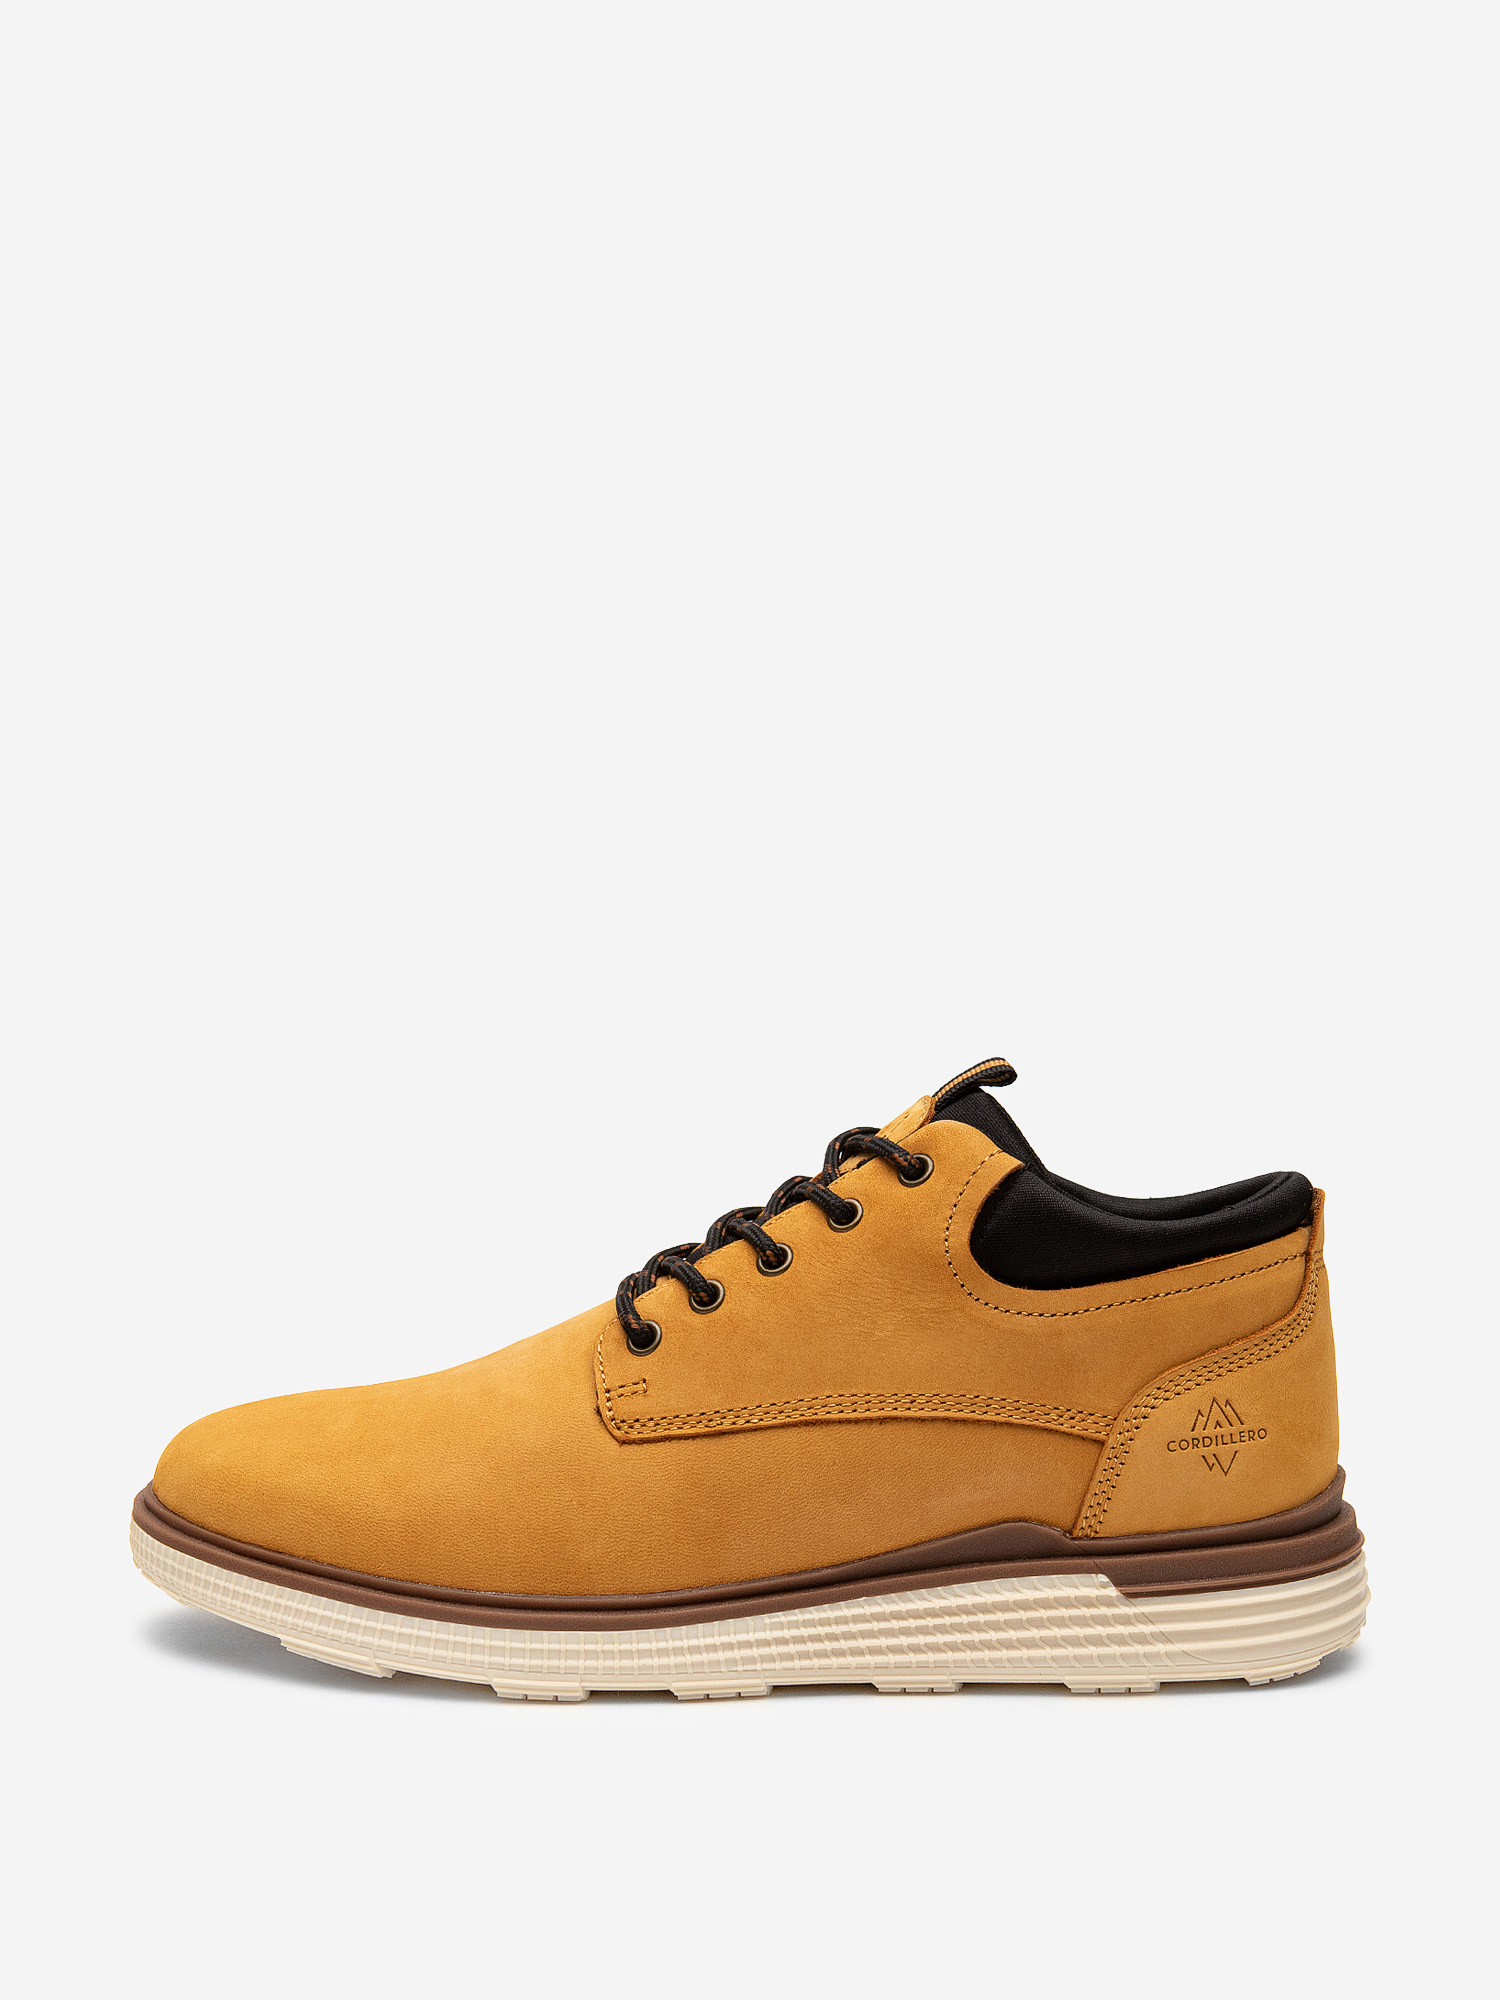 Ботинки мужские Cordillero Zircon, Желтый ботинки утепленные мужские cordillero sulphur fleece